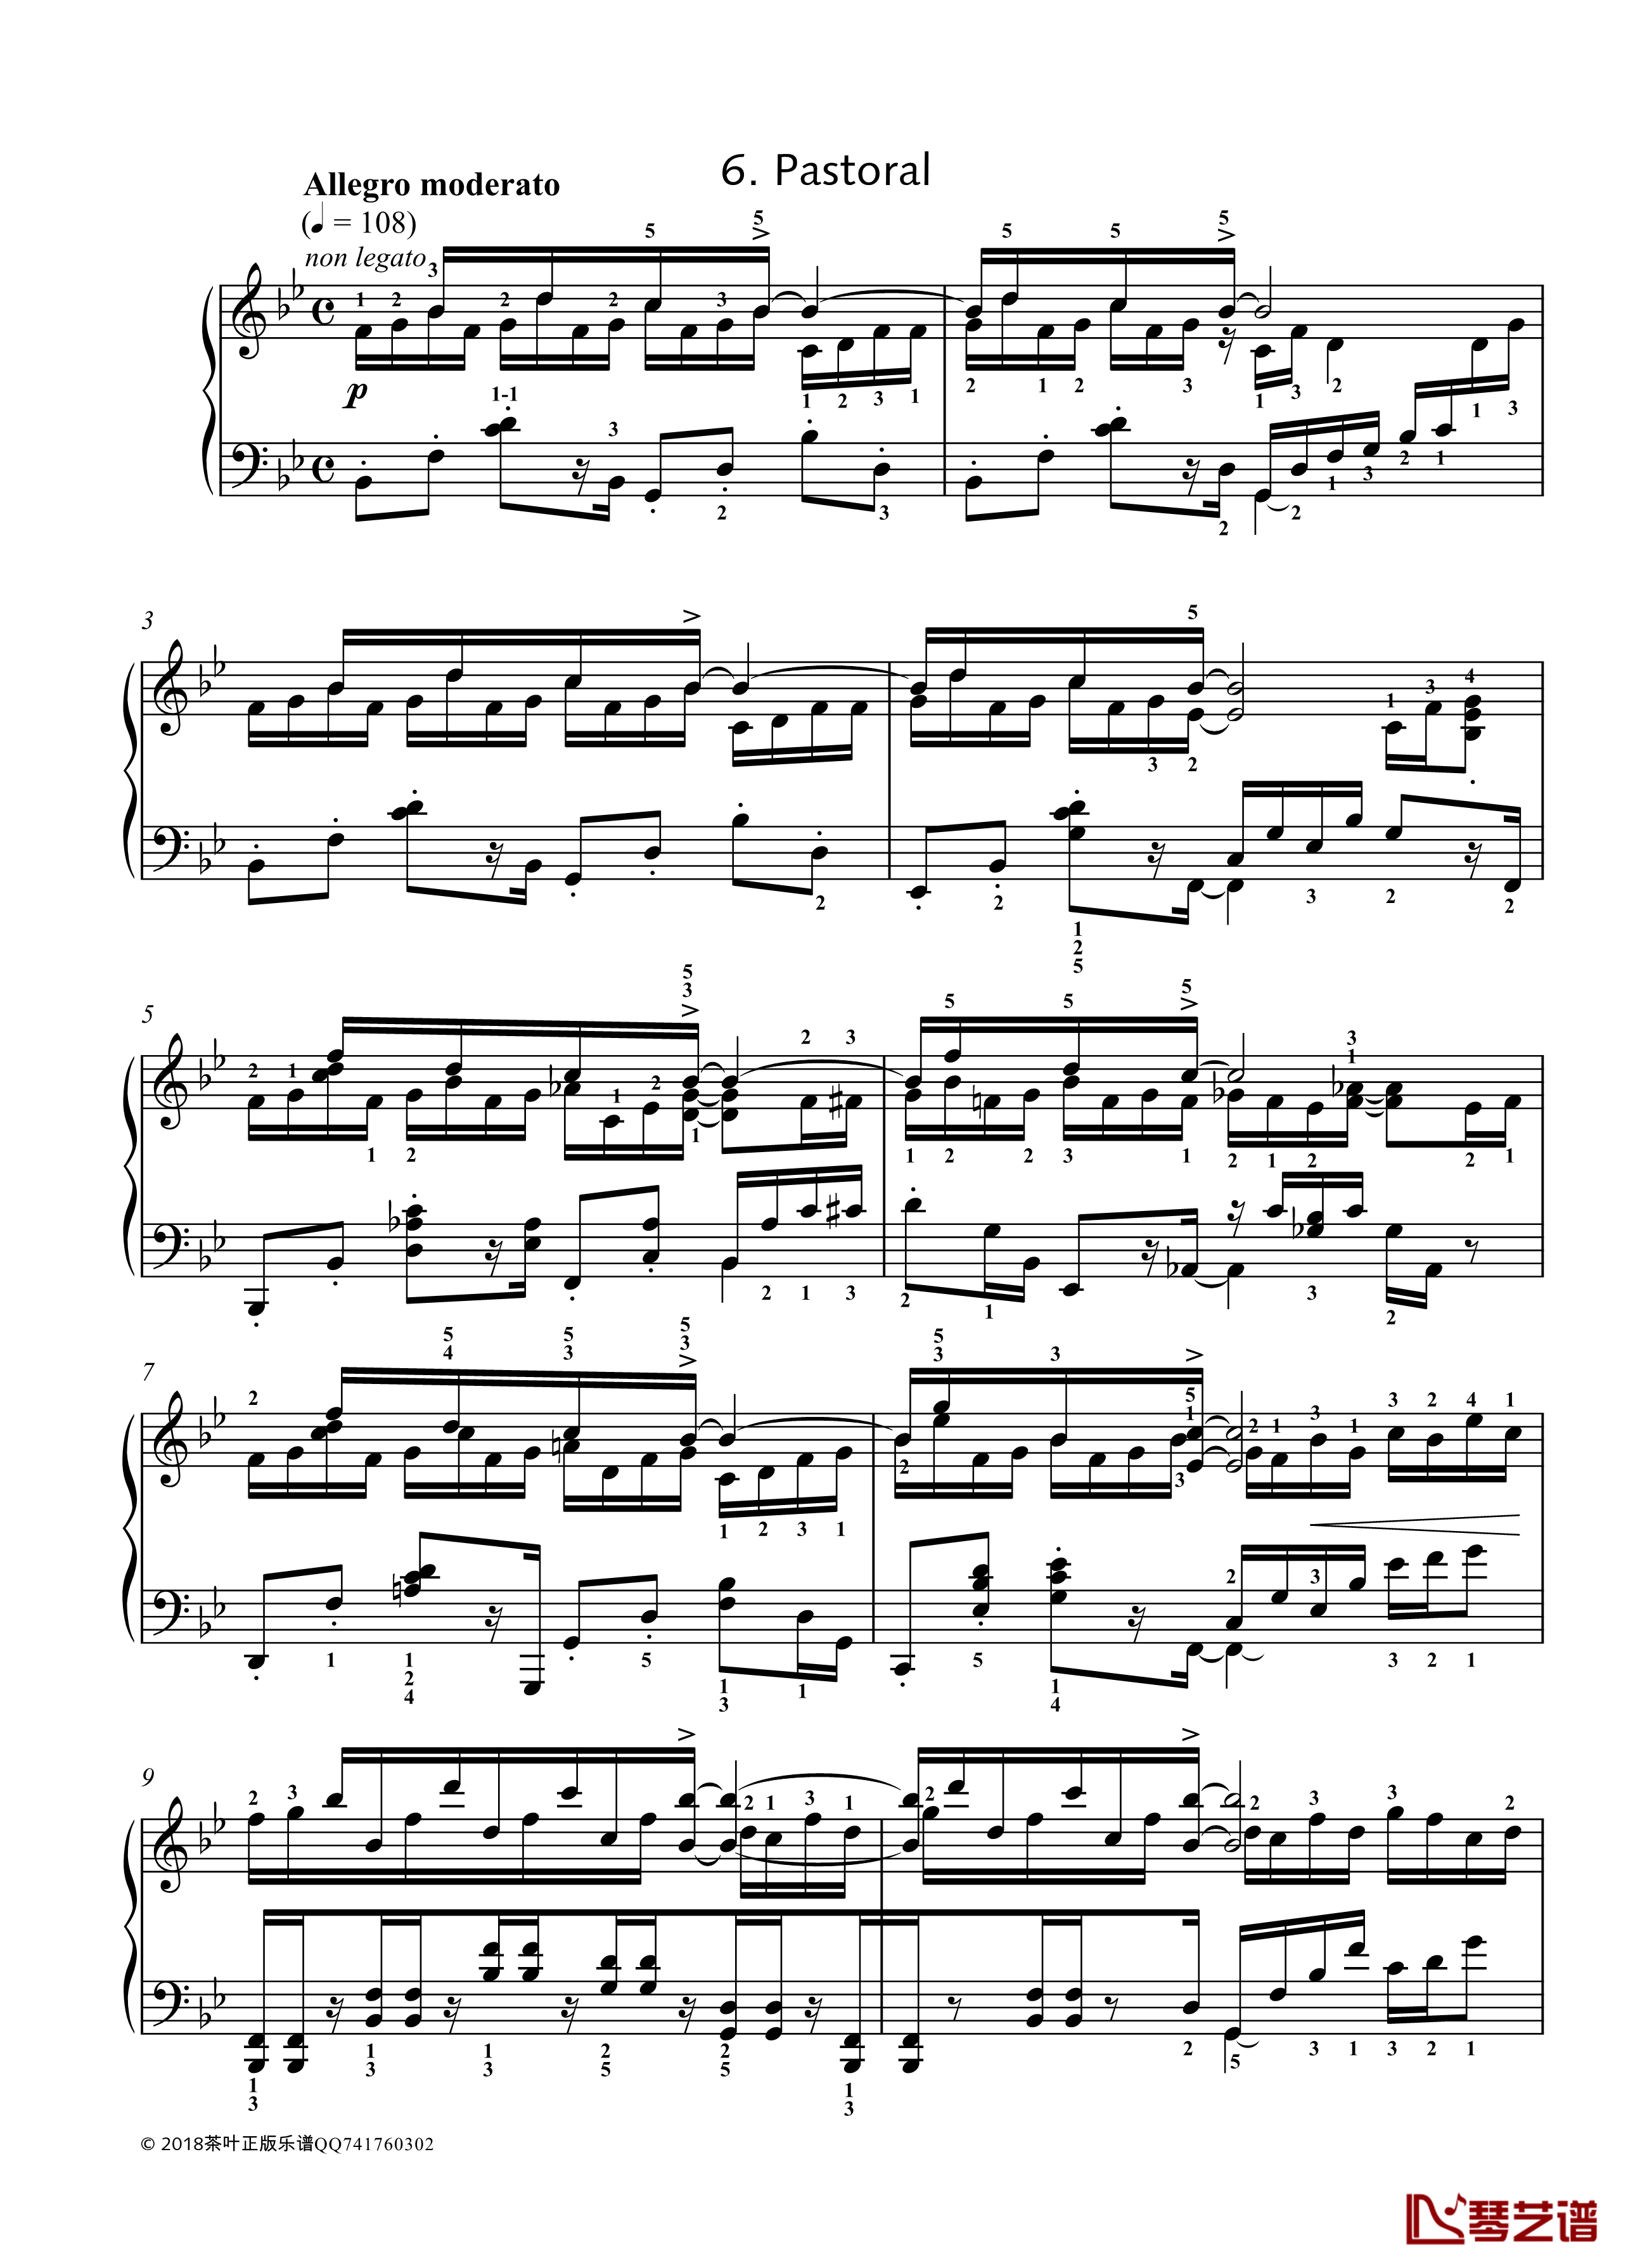 八首音乐会练习曲钢琴谱-Eight Concert ?tudes Op 40 - No. 6. Pastoral. Allegro moderato-爵士-尼古拉·凯帕斯汀1